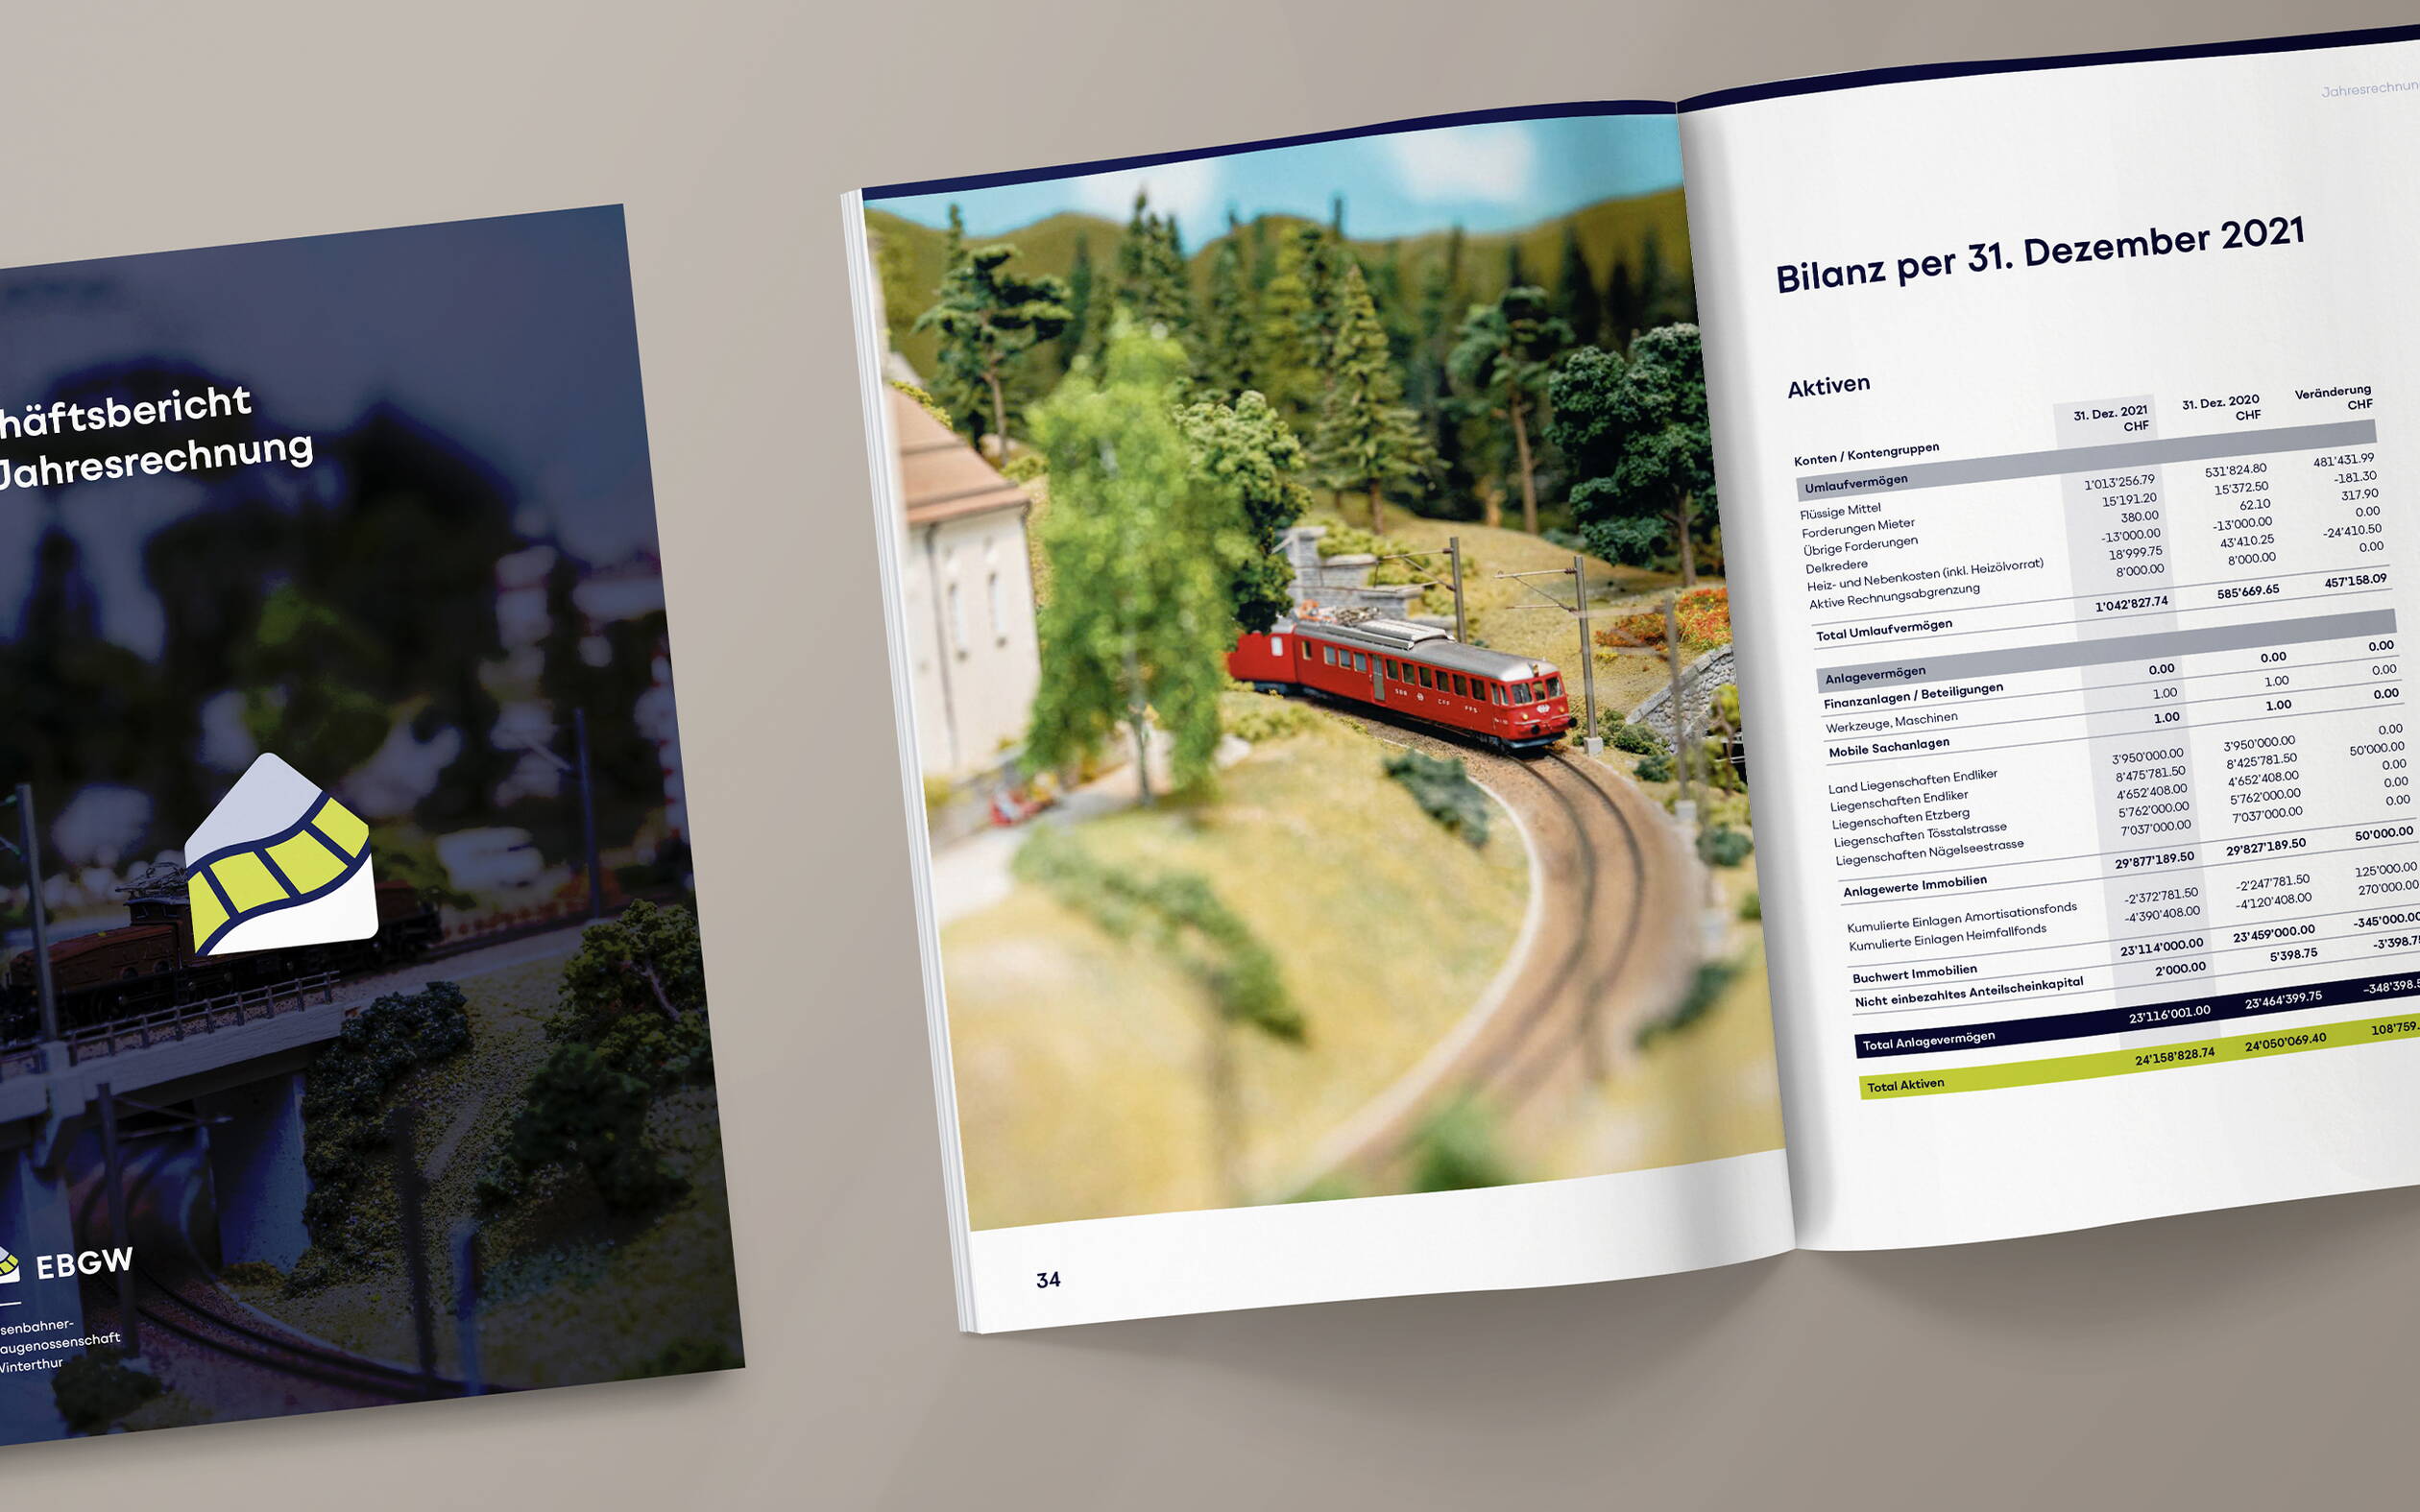 EBGW: Geschäftsbericht, Layout, Editorial Design, Grafikdesign und Branding von deiner Grafikagentur in Winterthur.